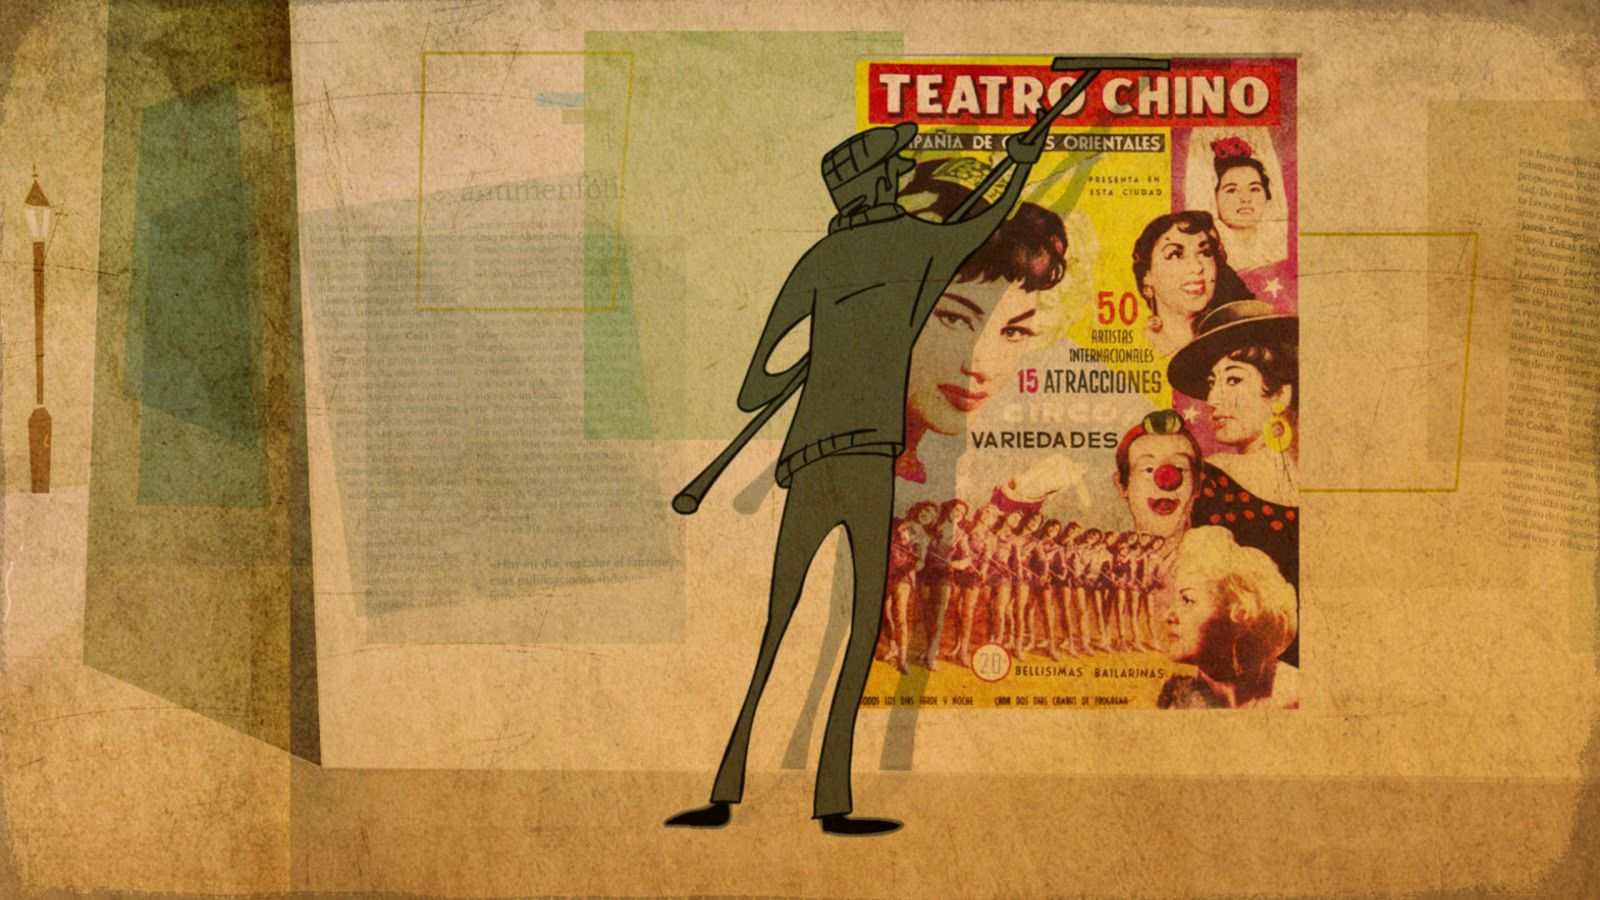 Somos documentales - Teatro chino de Manolita Chen, el cabaret de los pobres - Ver ahora